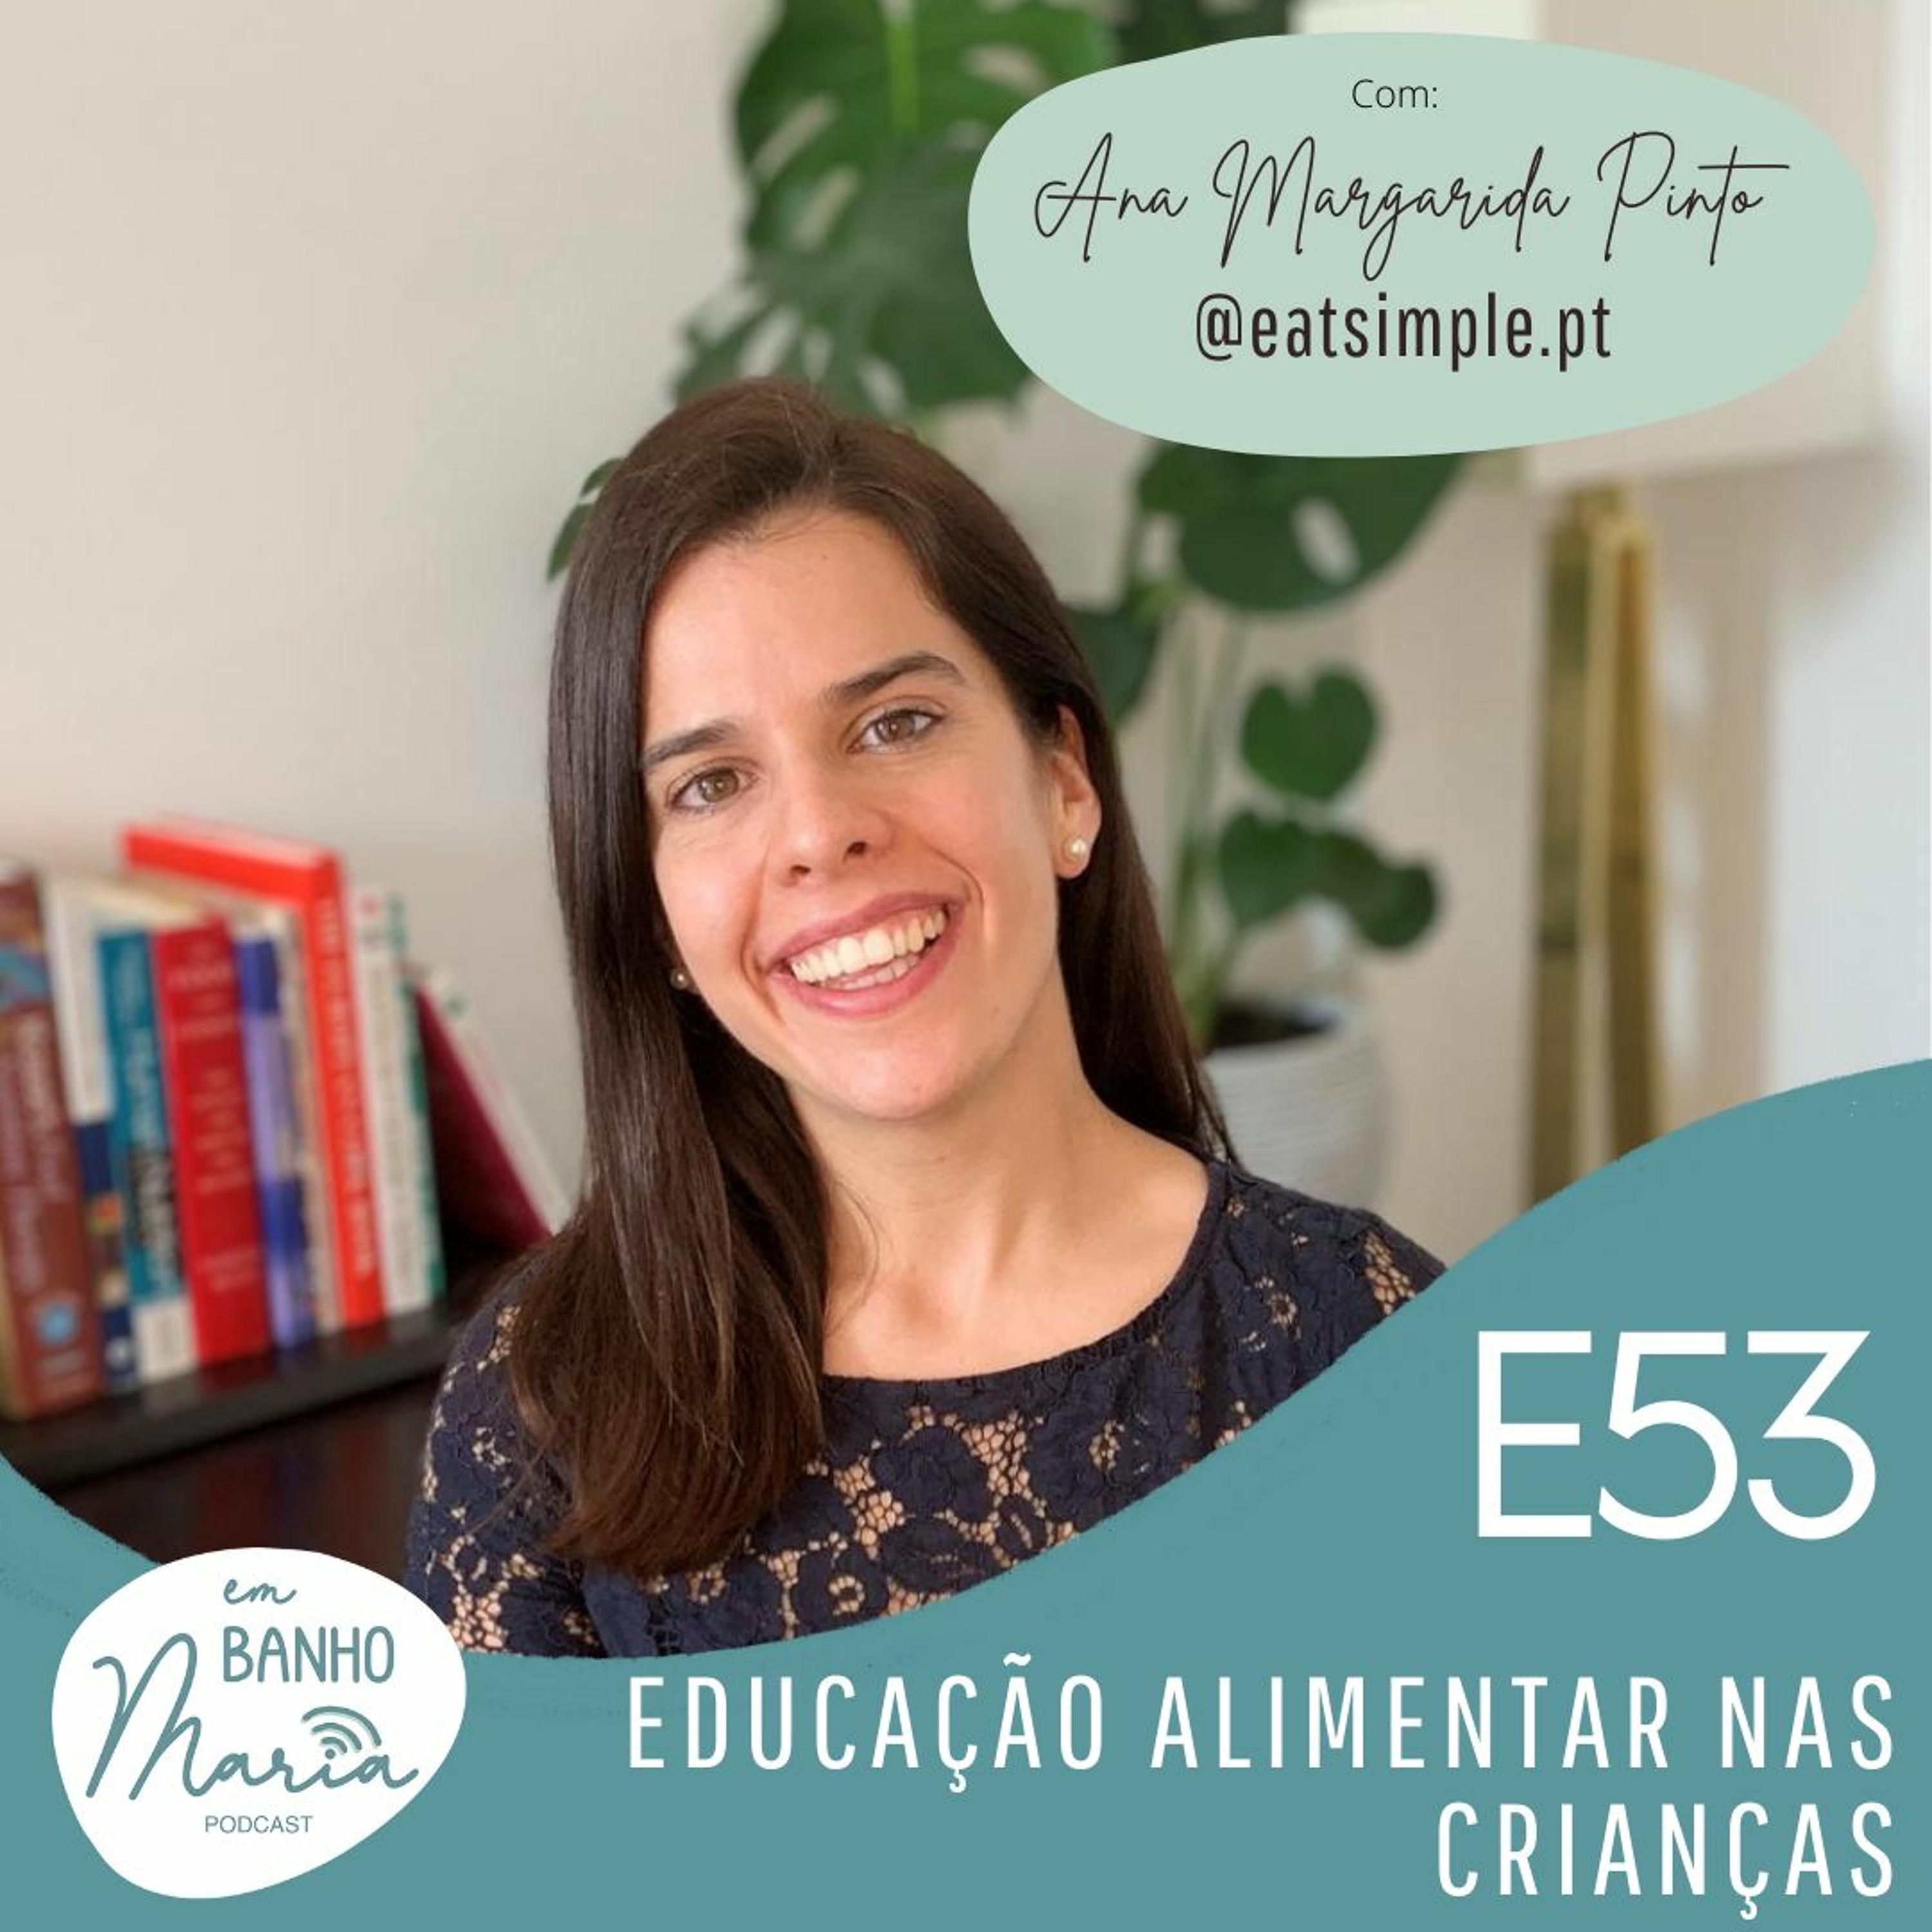 E53: Educação Alimentar nas Crianças, com Ana Margarida Pinto